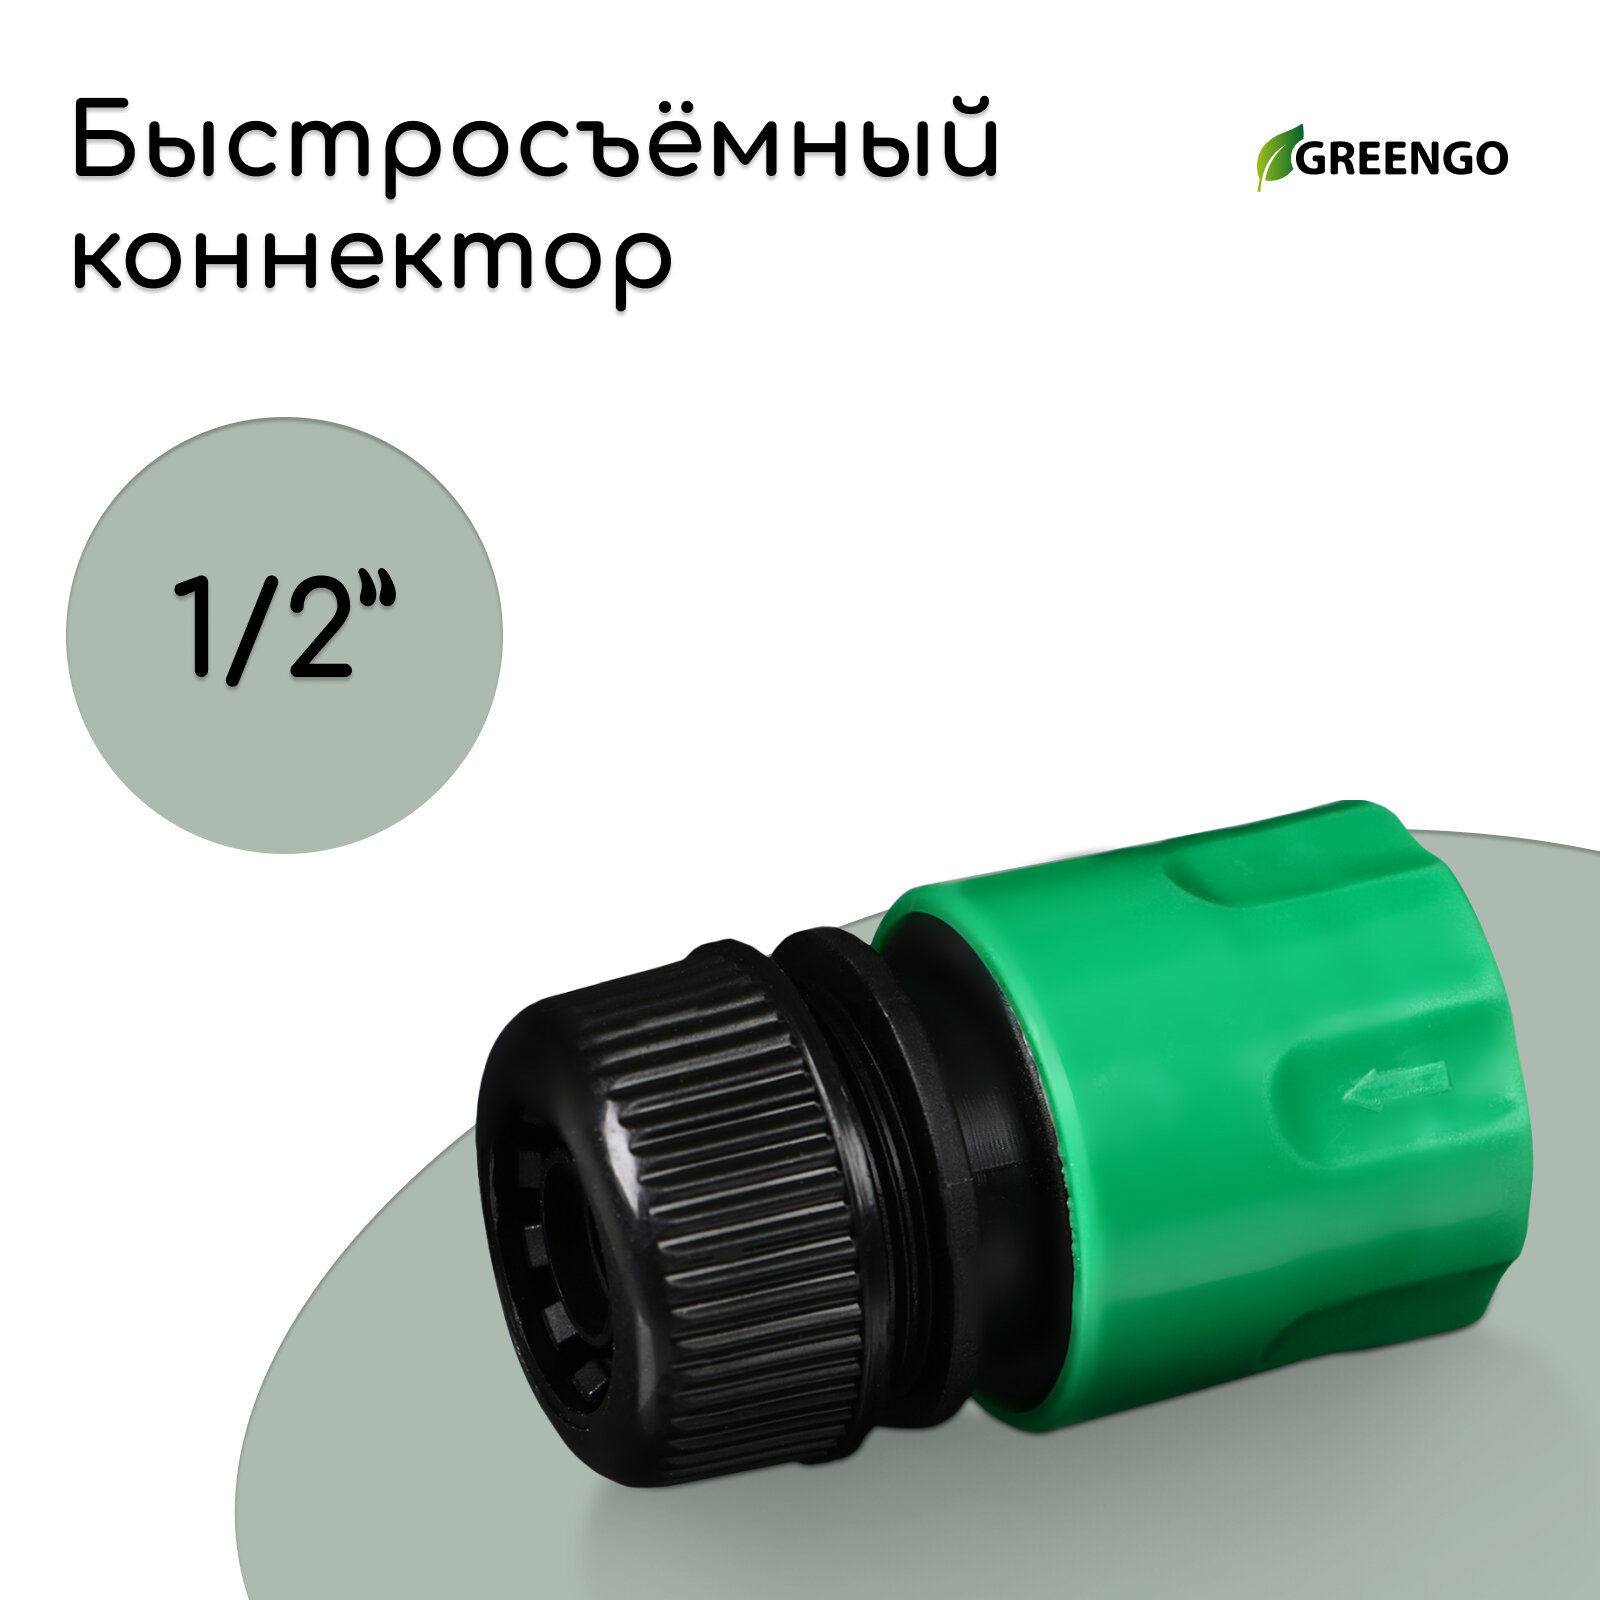 Коннектор, 1/2" (12 мм), быстросъёмное соединение, рр-пластик, микс, Greengo